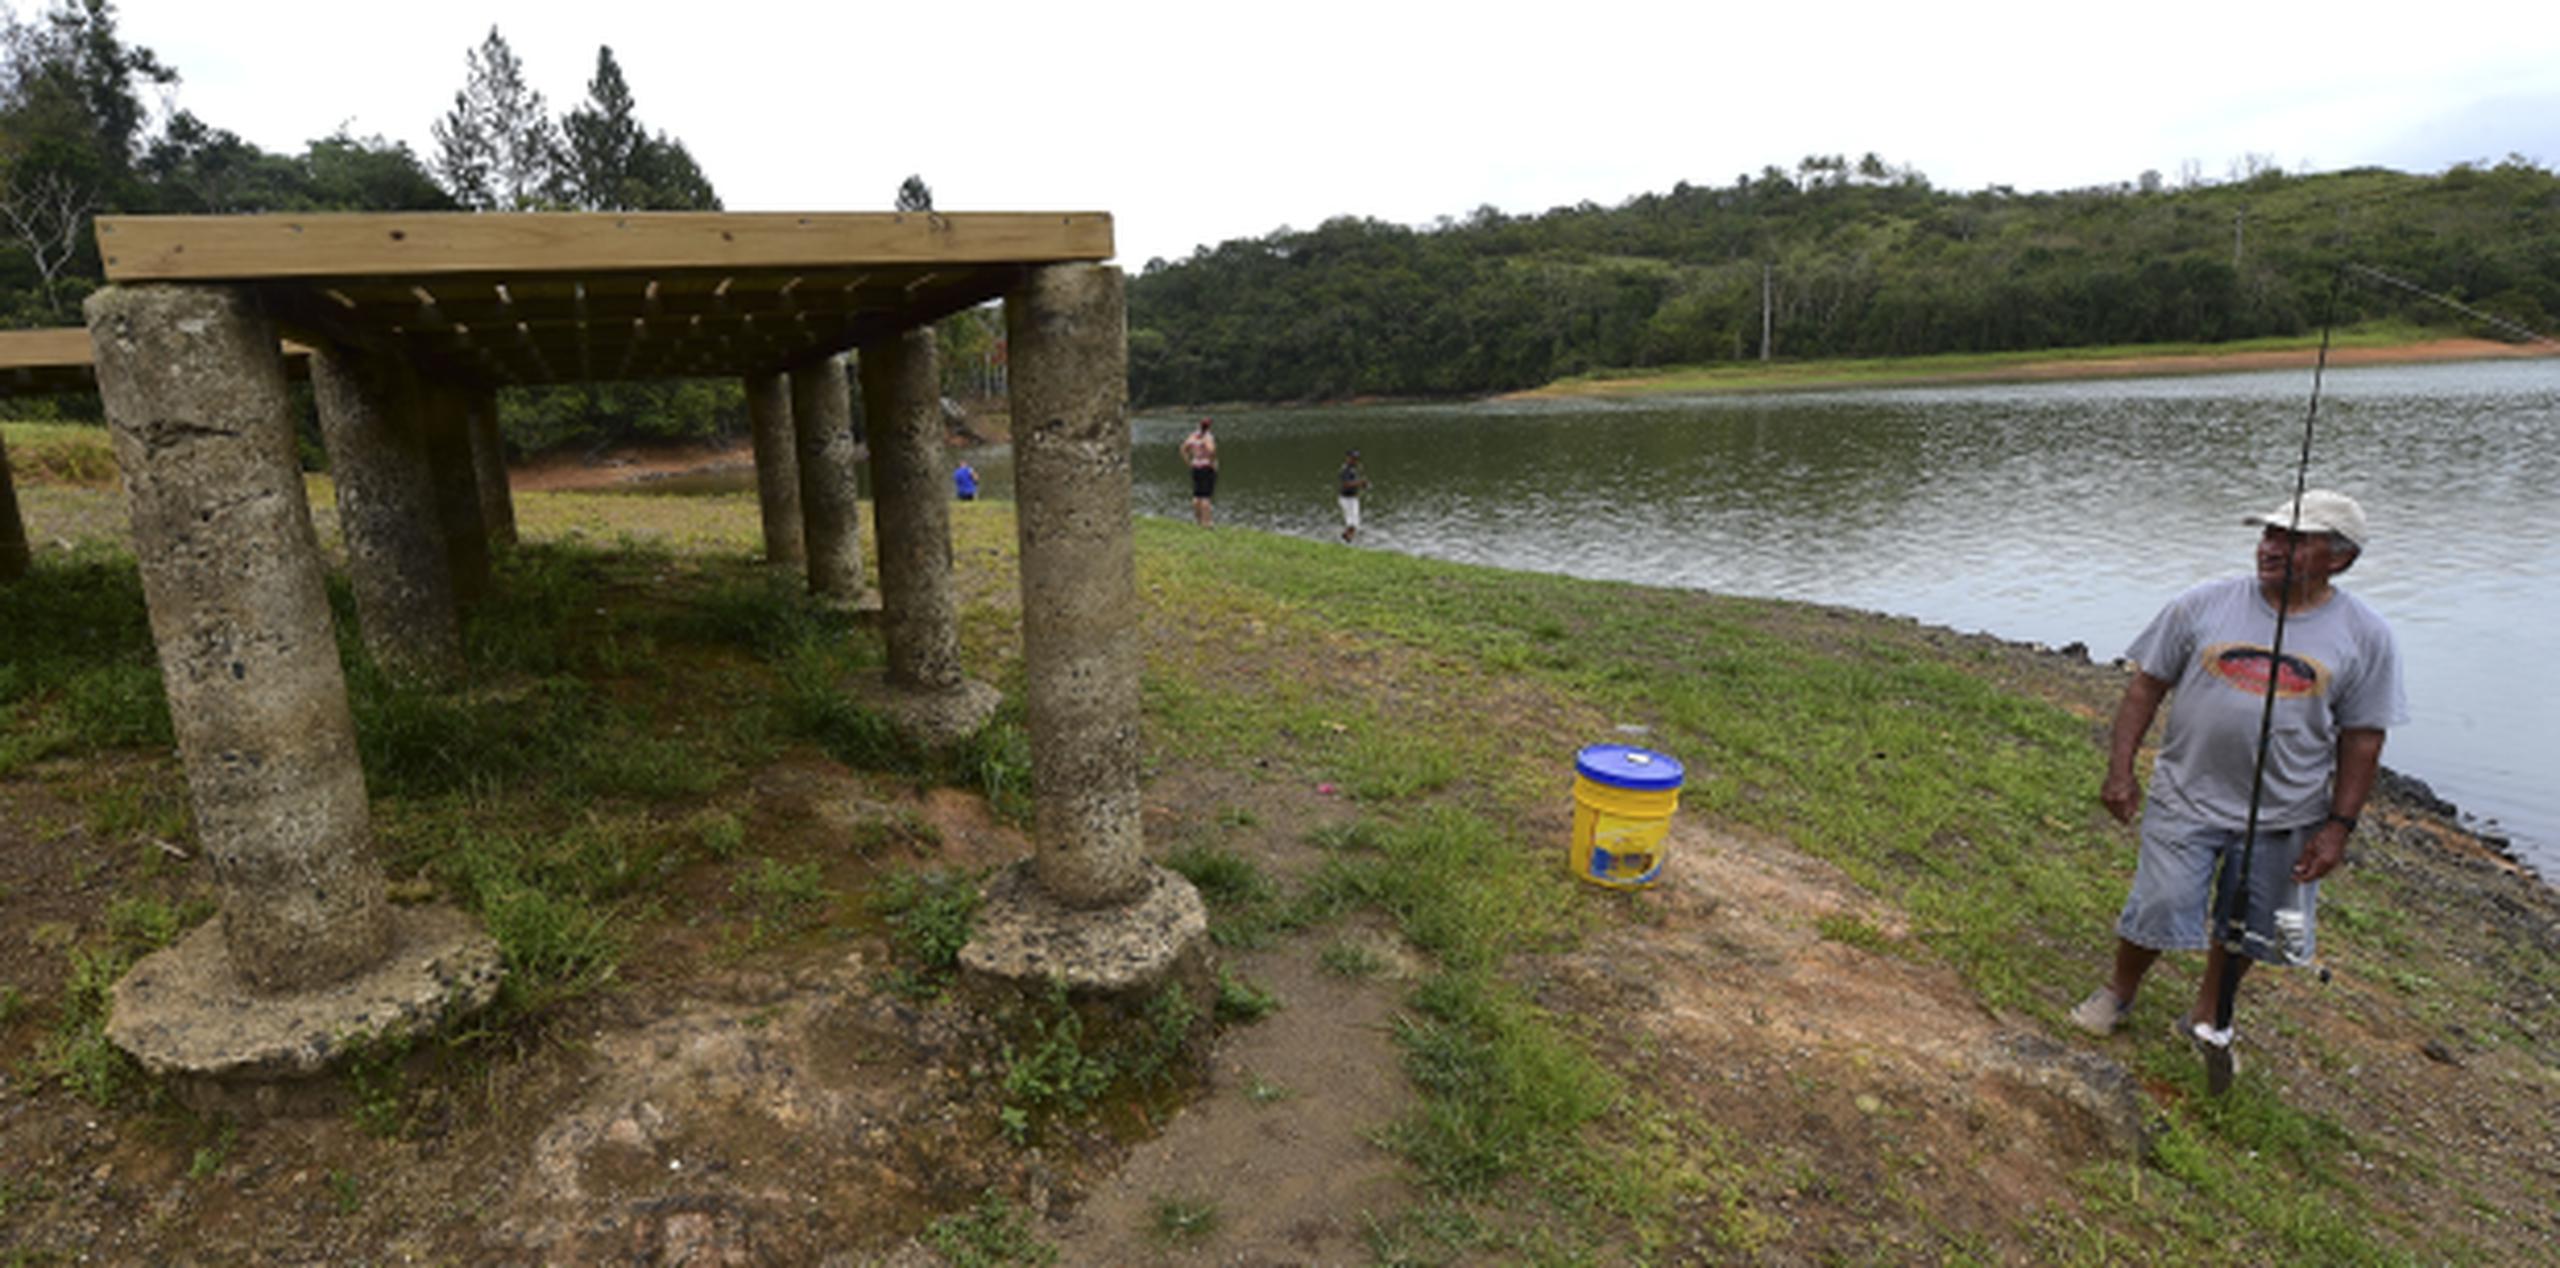 Los niveles de agua en El embalse de Cidra se encuentran entre los que más ha bajado recientemente. (Tony.zayas@gfrmedia.com)